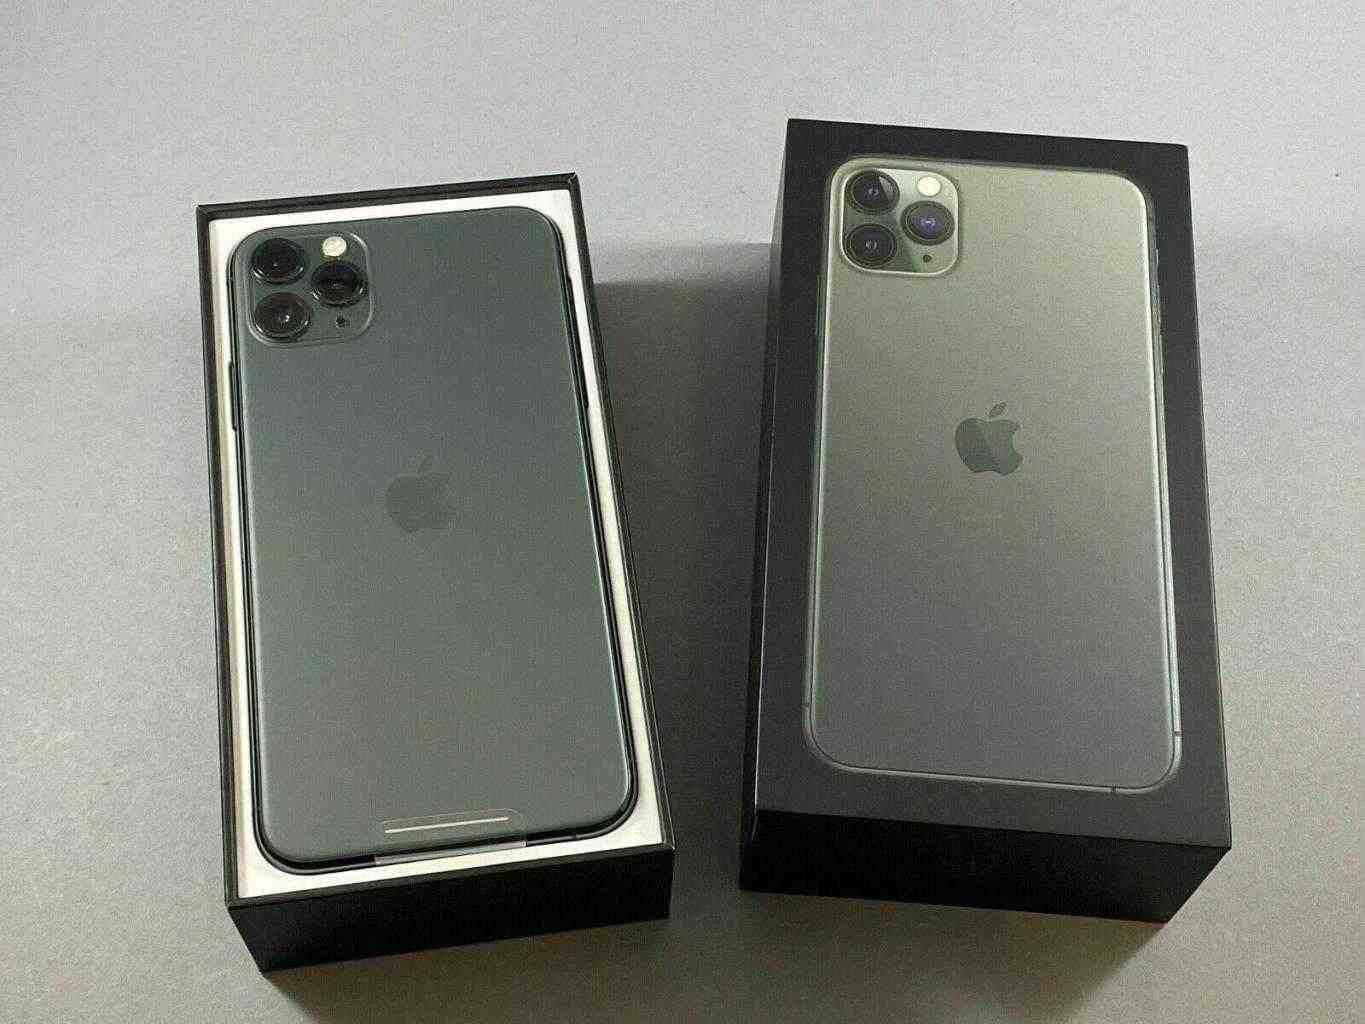 Apple iPhone 11 Pro Max - 512GB (Sbloccato) NUOVO CON SCATOLA